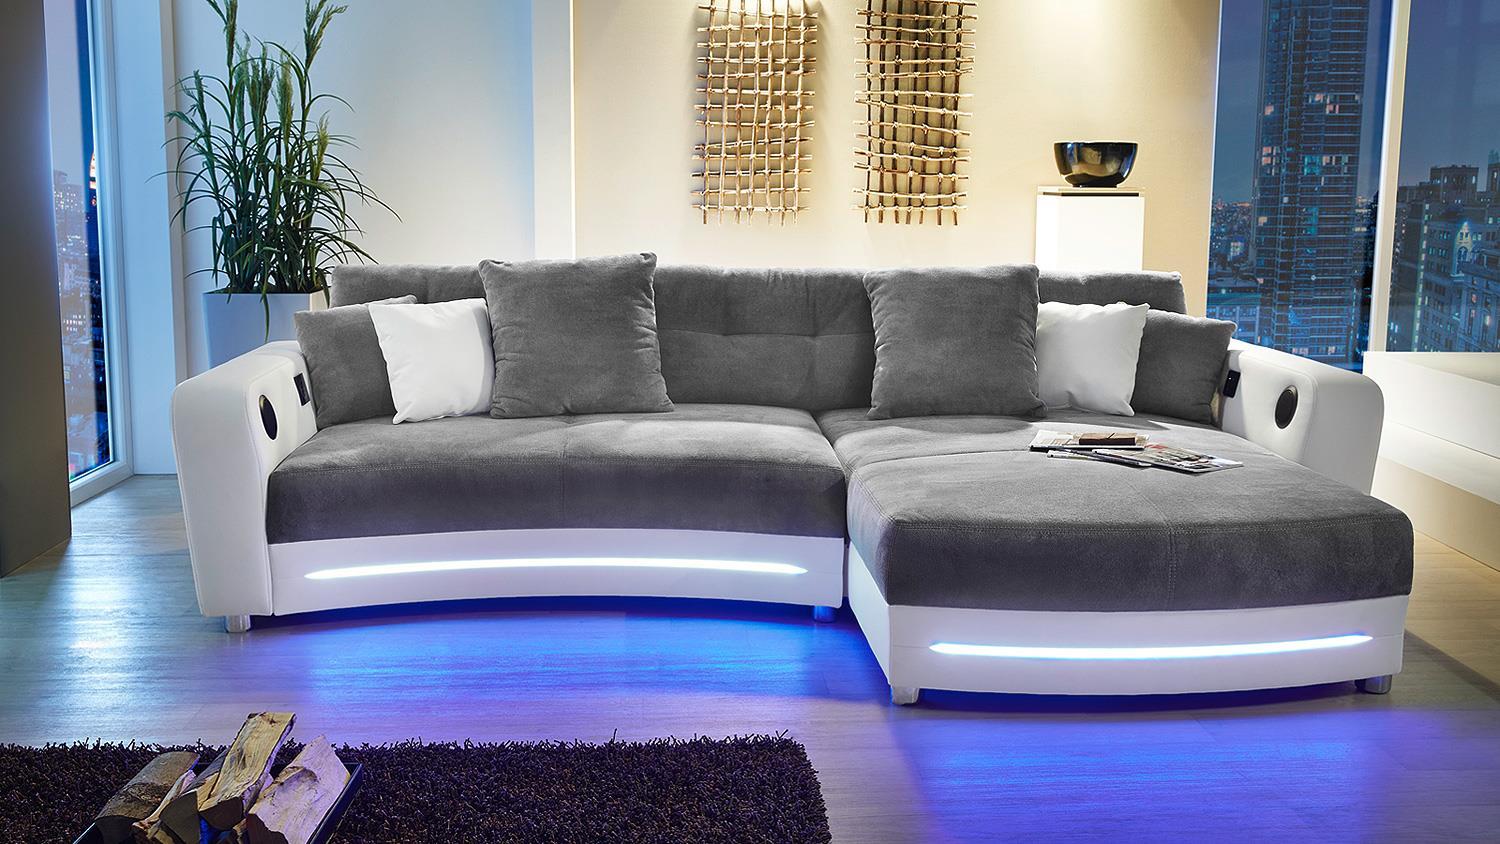 Wohnlandschaft LAREDO Sofa weiß grau mit LED und Soundsystem Bild 1